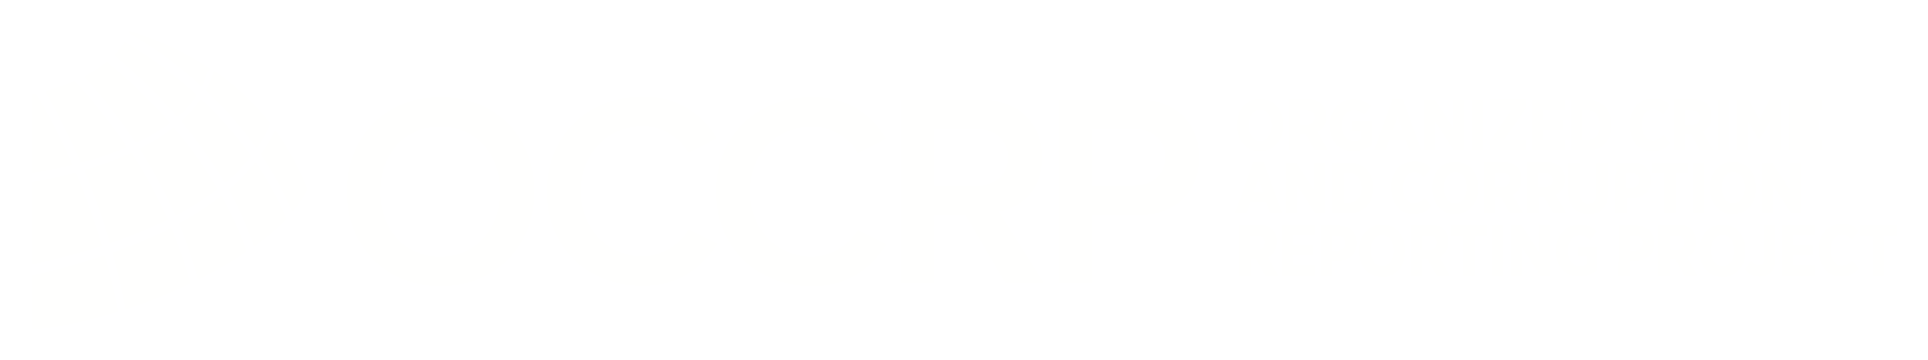 OCCRP logo